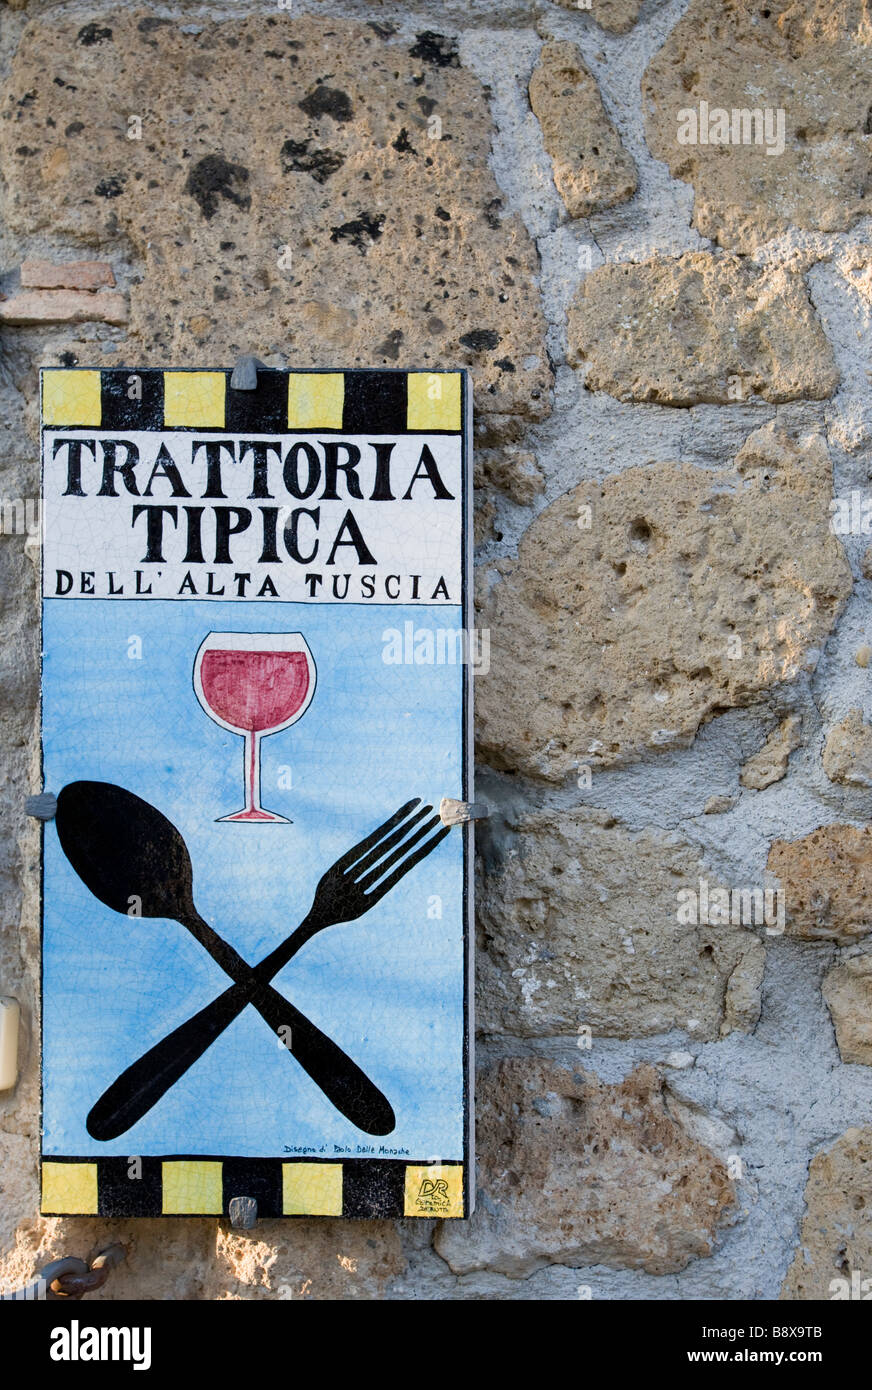 Ceramic restaurant plaque/sign 'Trattoria Tipica Dell' alta Tuscia' Stock Photo